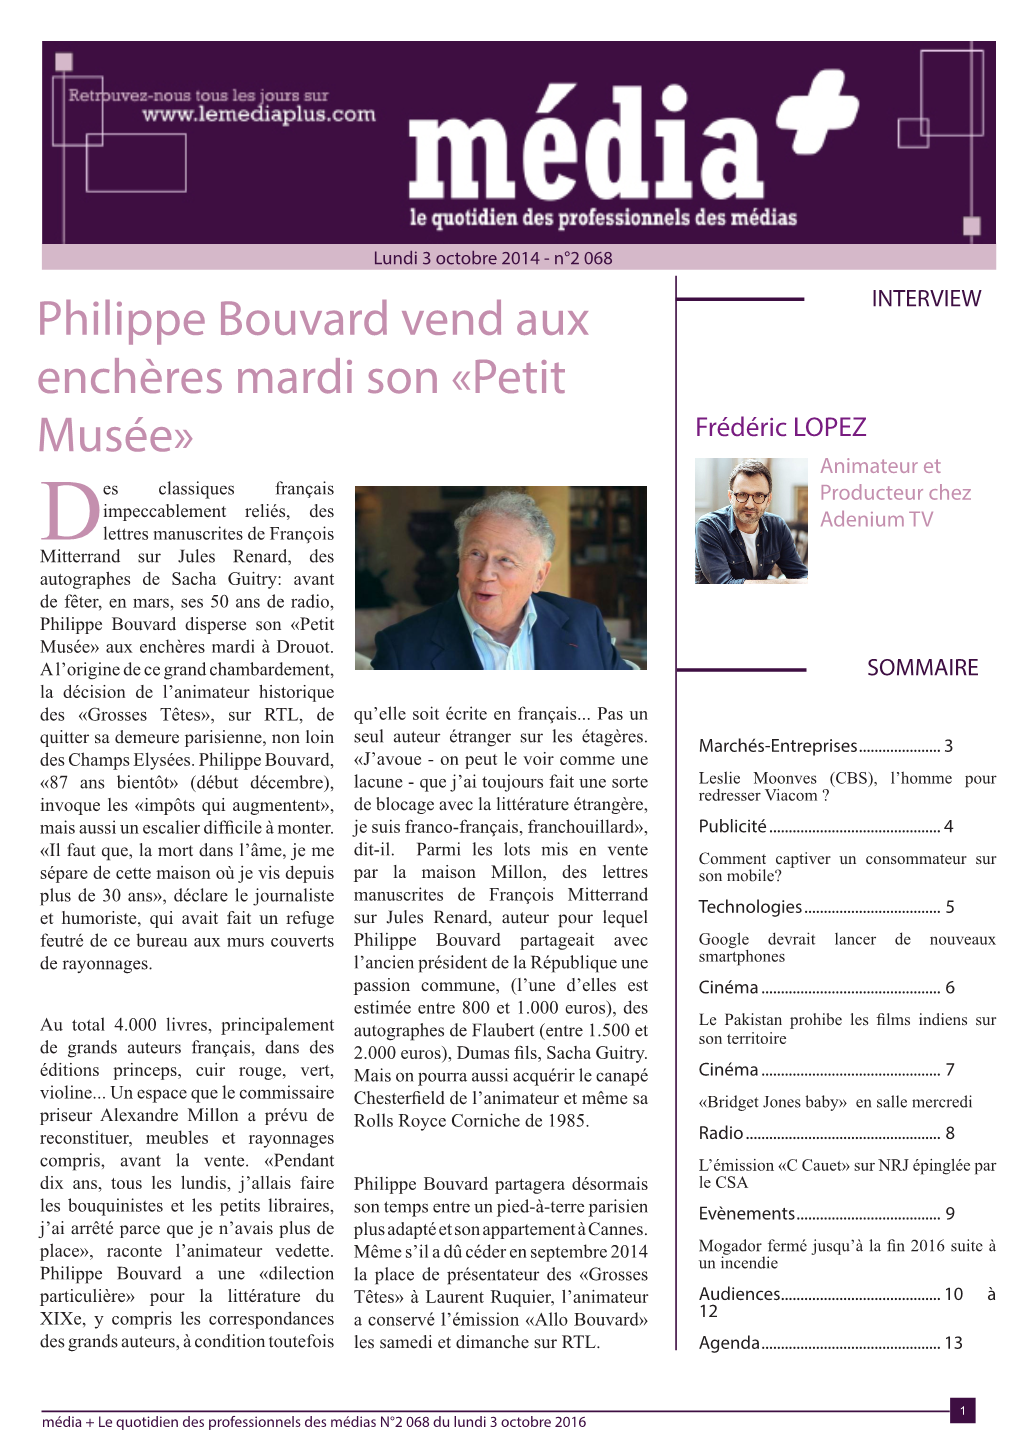 Philippe Bouvard Vend Aux Enchères Mardi